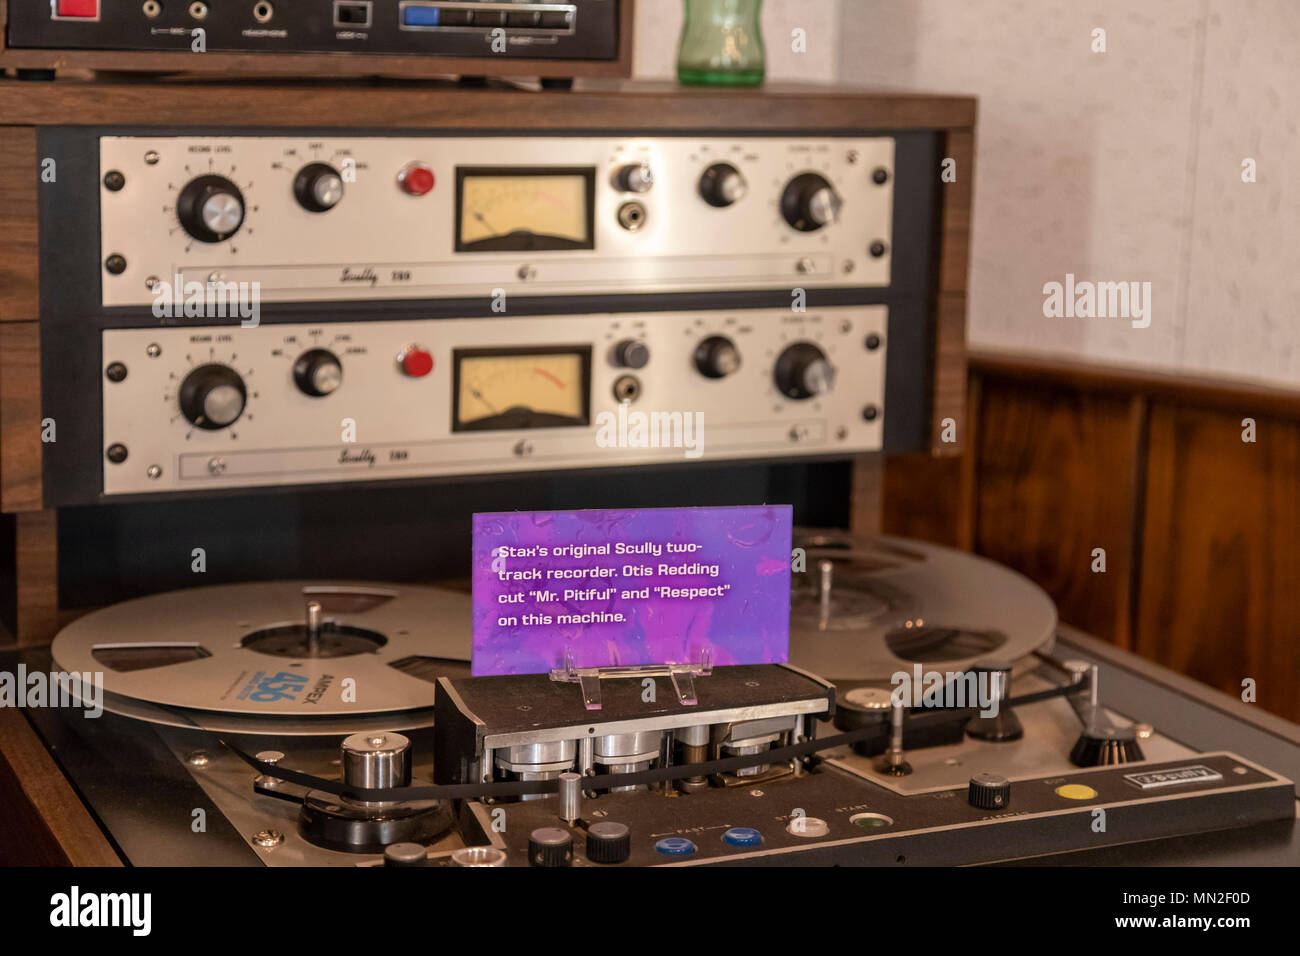 Memphis, Tennessee - Vintage apparecchiature di registrazione presso il Museo di Stax della Musica Soul Americana, l'ex posizione di Stax record. Foto Stock